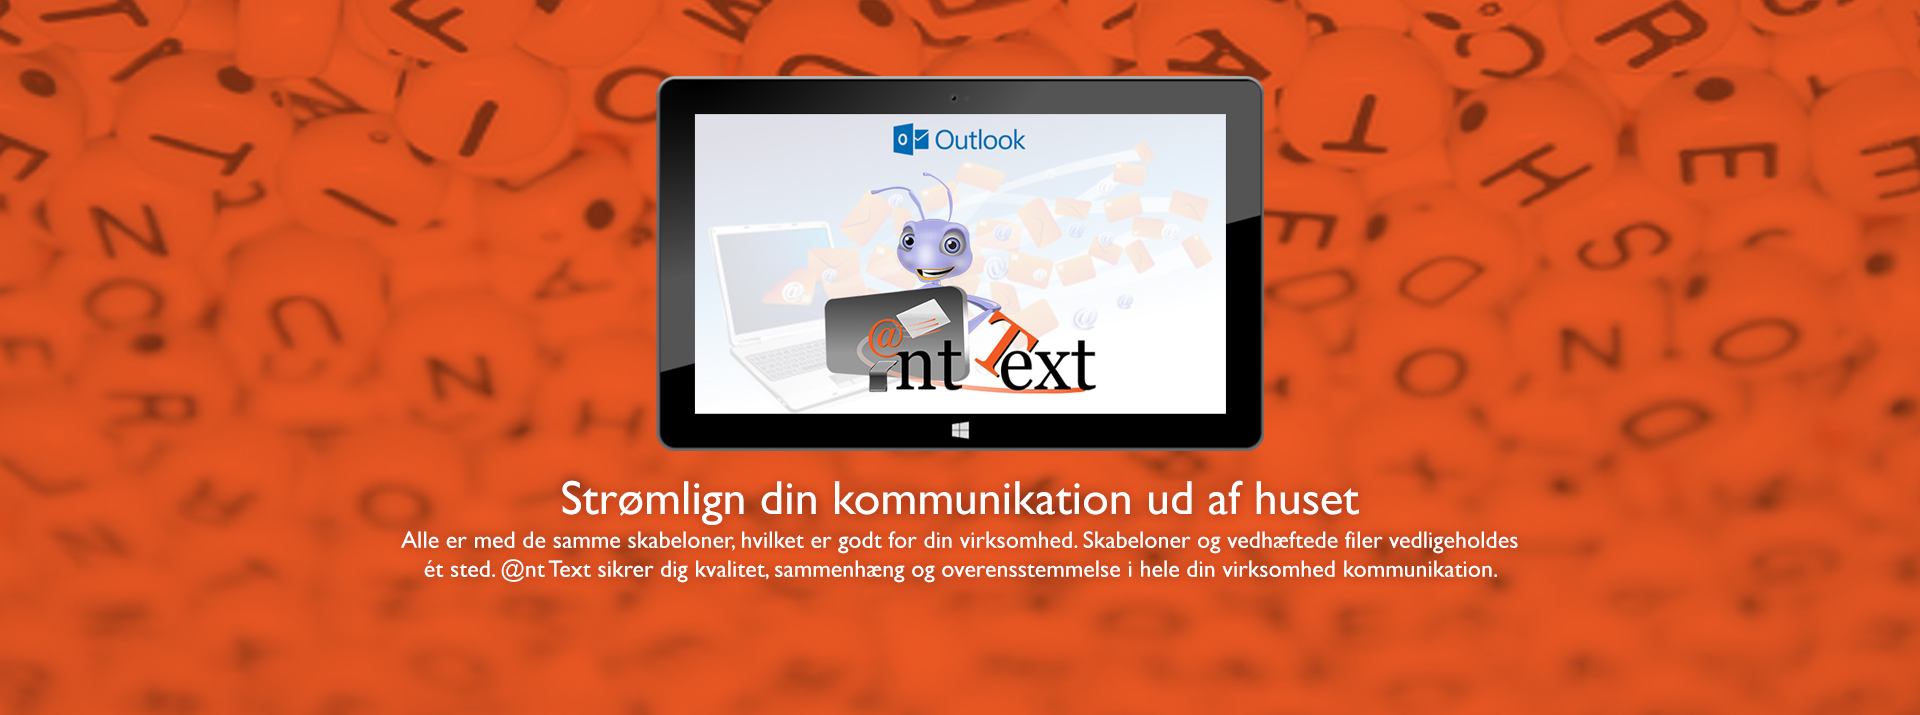 Header med tablet - skærm viser Ant Text og Outlook logos - Tekst Strømlign din kommunikation ud af huset